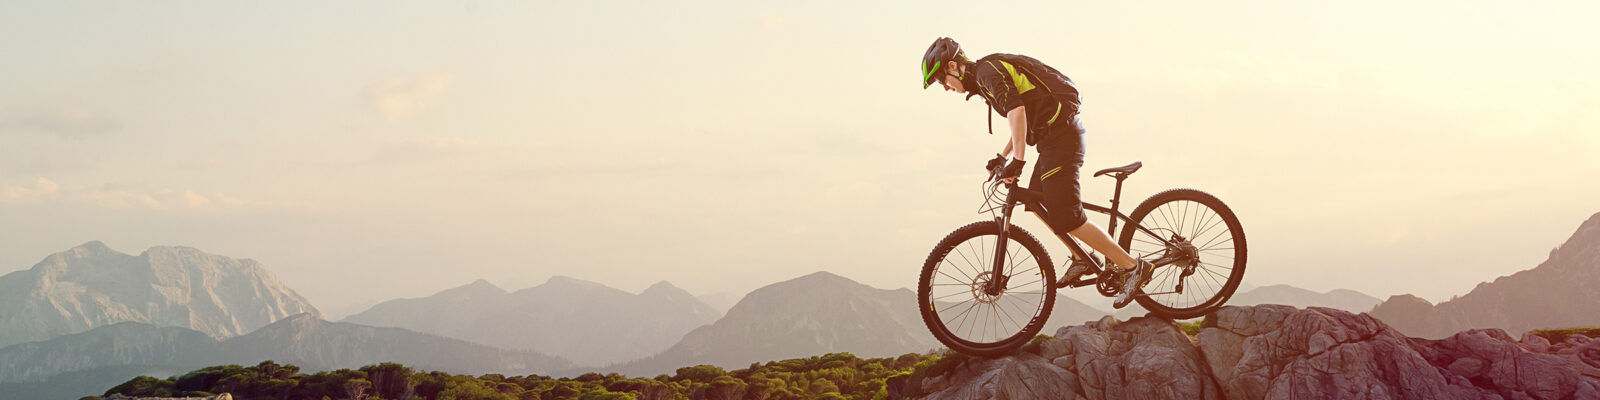 Ein Fahrradfahrer mit seinem Fahrrad in Bewegung auf einem Felsen.